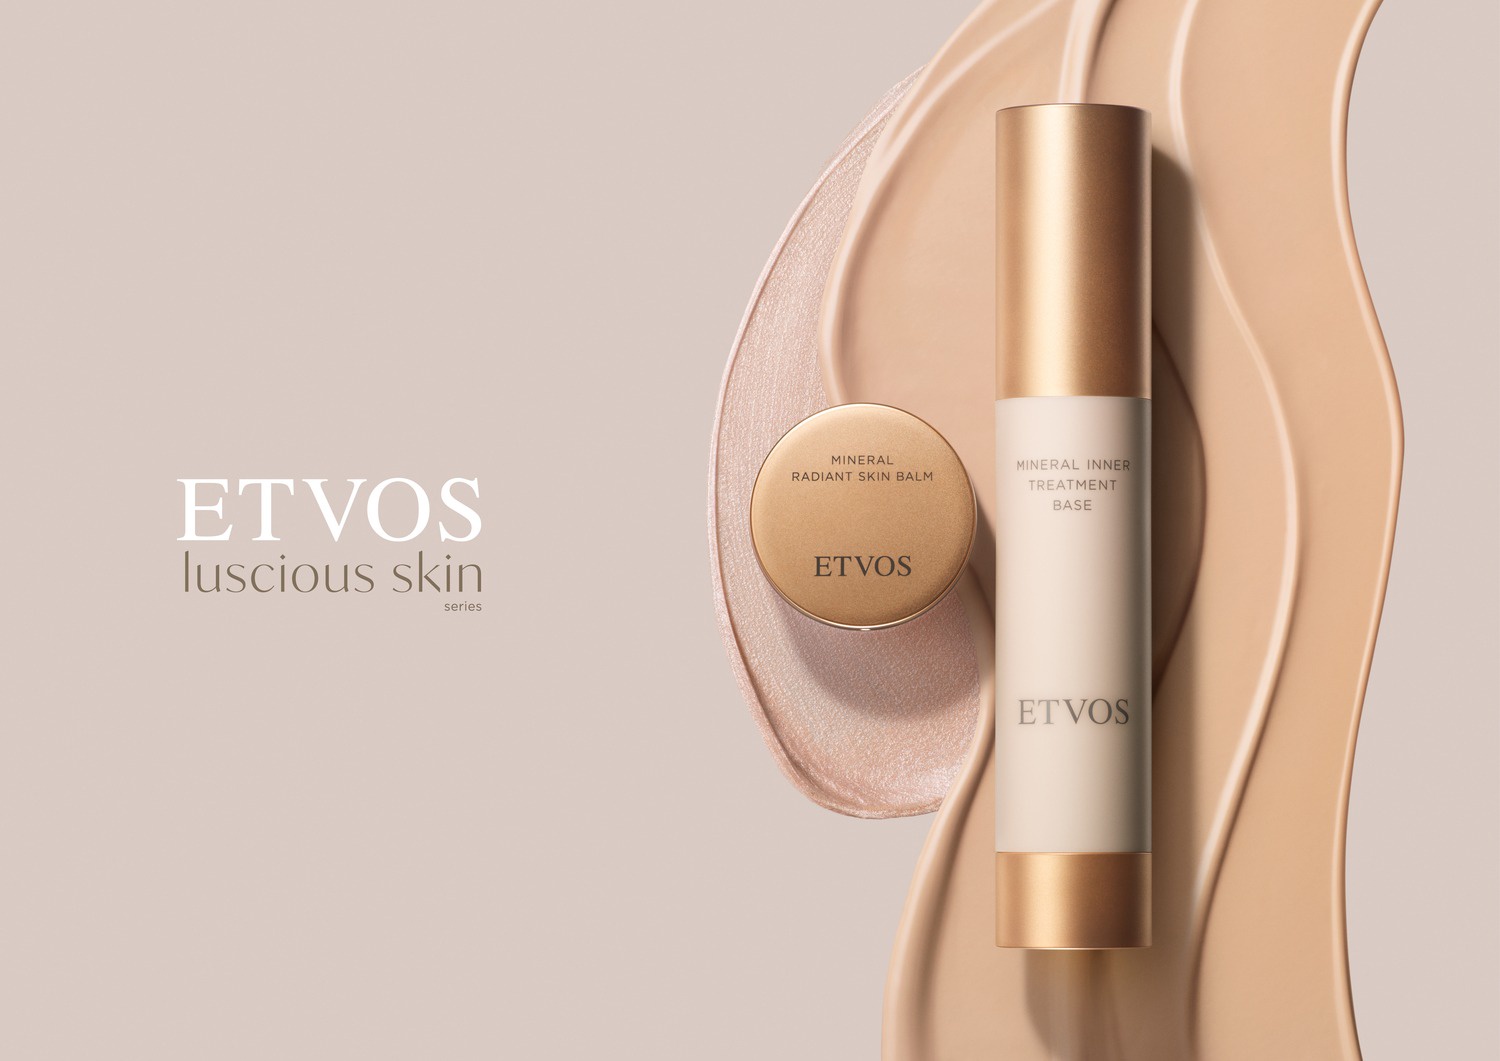 エトヴォス Etvos のおすすめ最新情報 美容 化粧品情報はアットコスメ